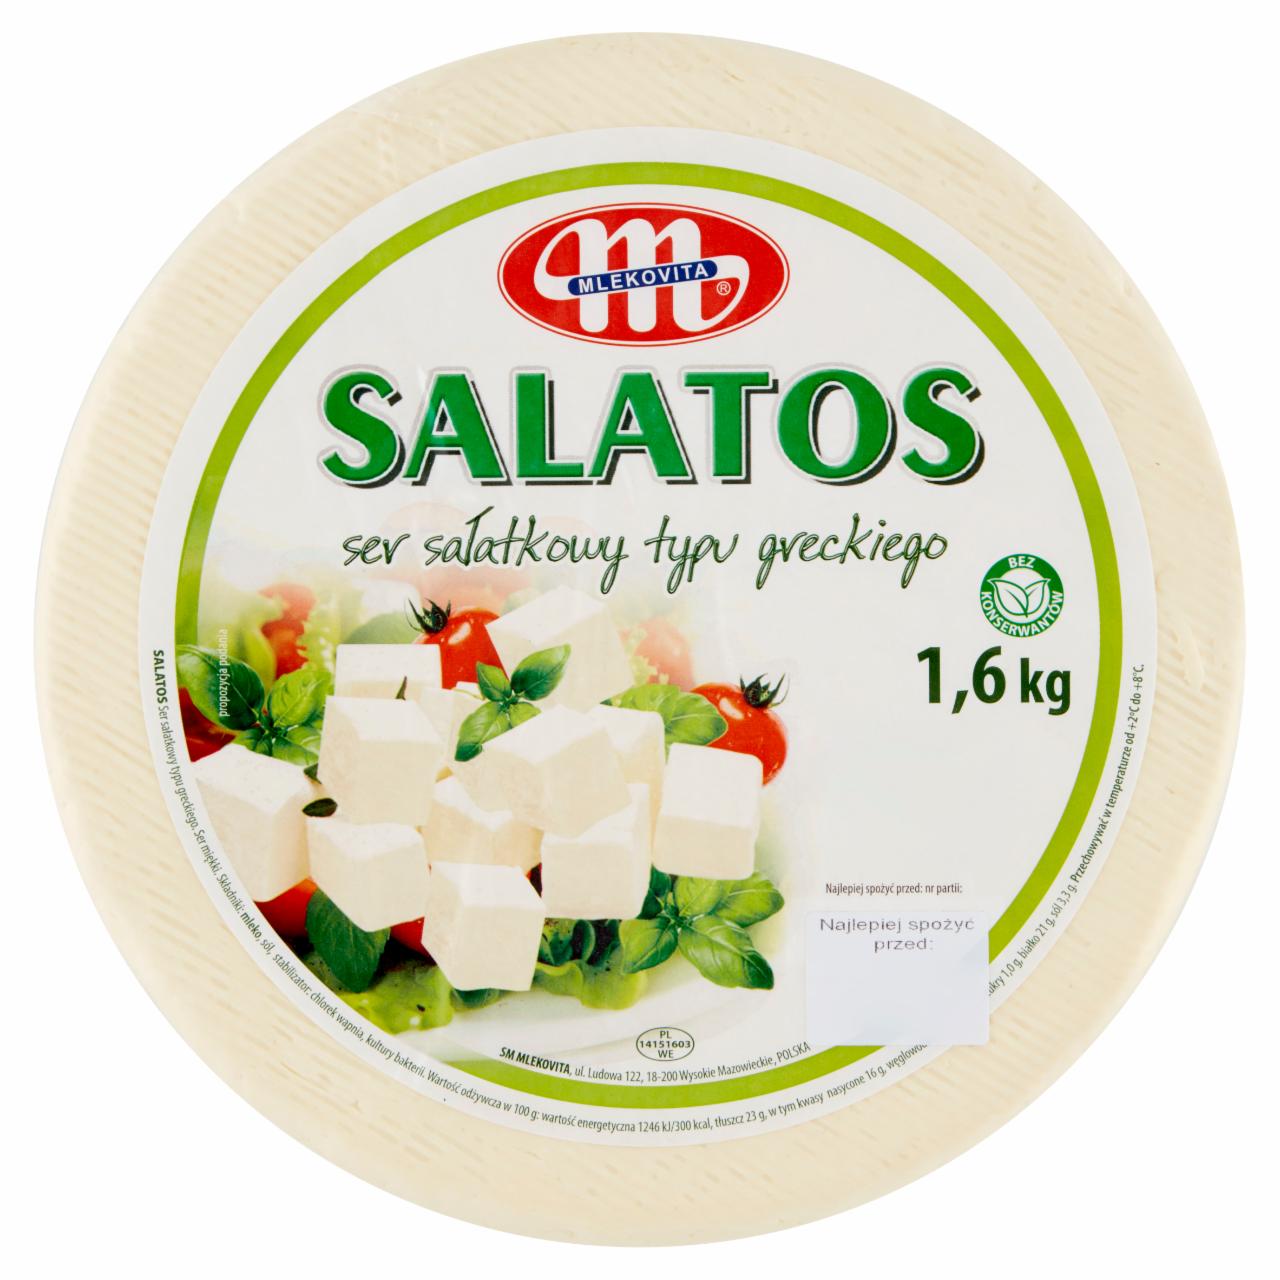 Zdjęcia - Salatos Ser sałatkowy typu greckiego Mlekovita